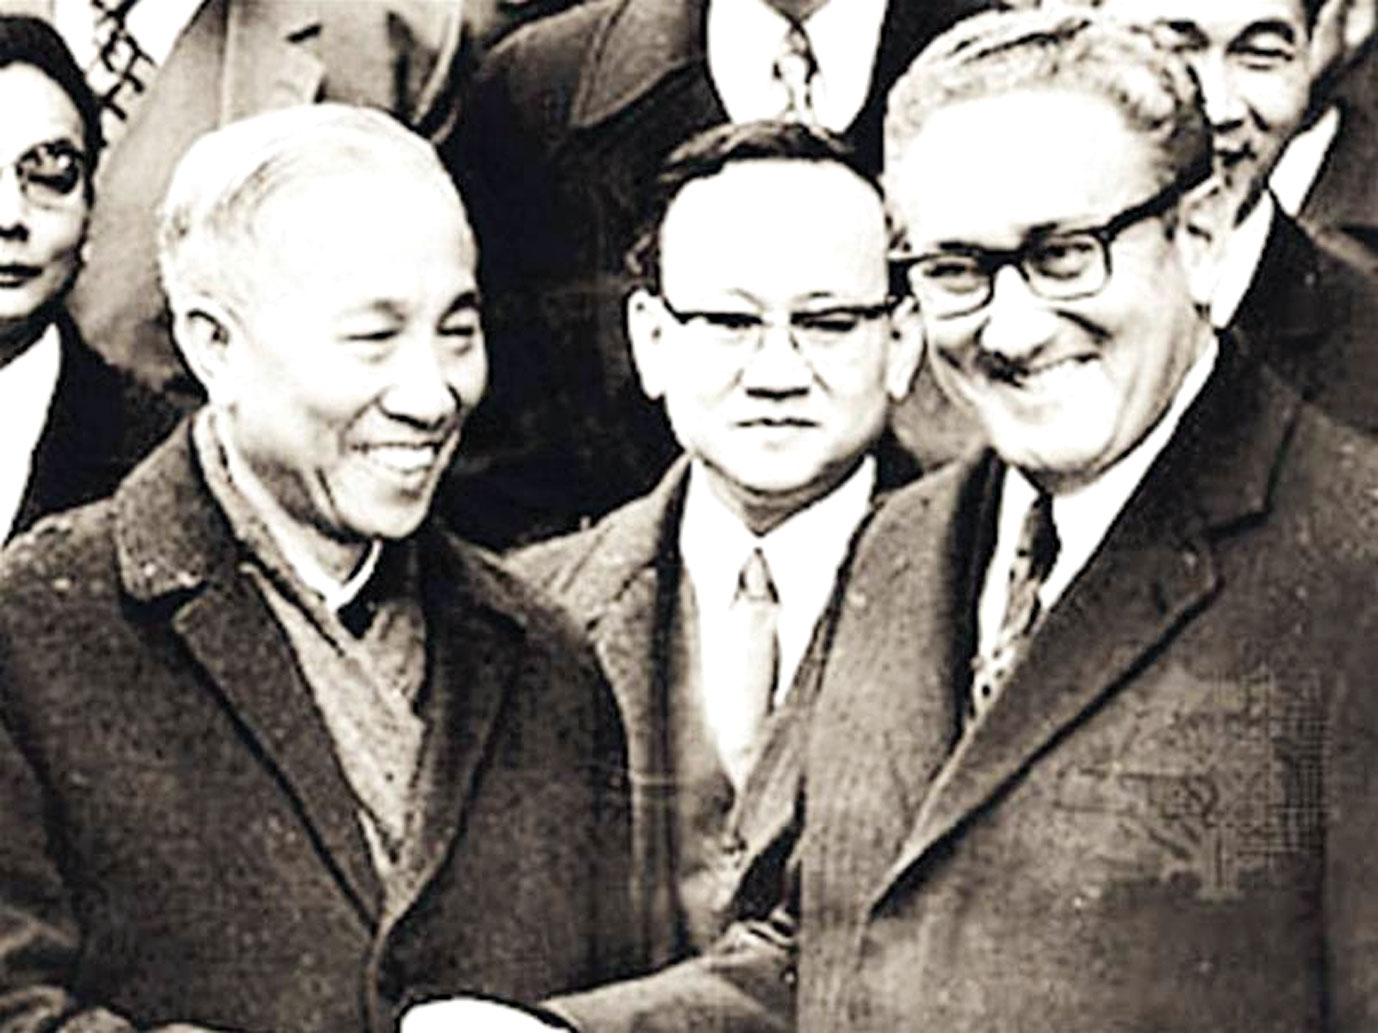 Cố vấn đặc biệt Lê Đức Thọ, đại diện đoàn Việt Nam Dân chủ Cộng hòa và Cố vấn đặc biệt của Tổng thống Hoa Kỳ, Tiến sĩ Henry Kissinger chúc mừng nhau sau lễ ký tắt.